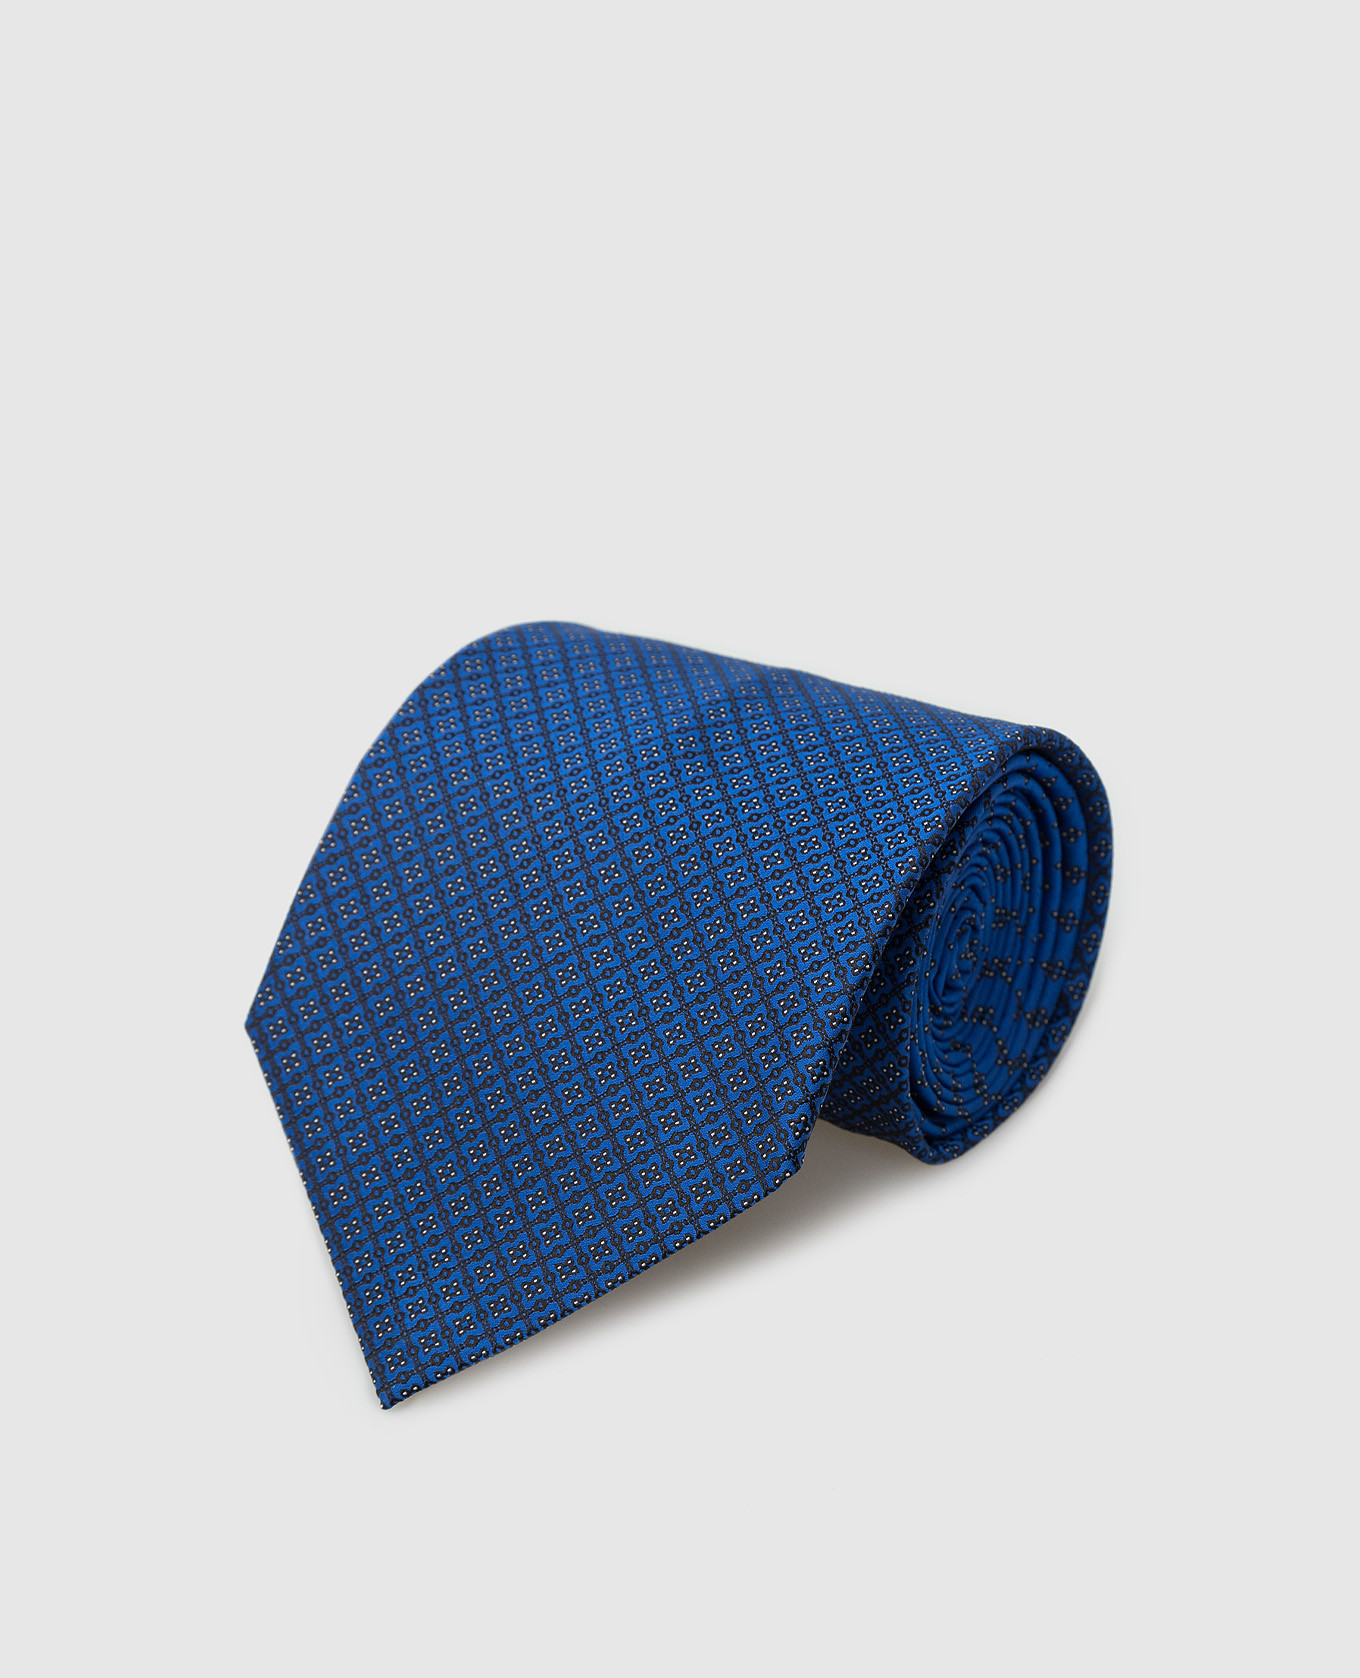 Blue silk tie in pattern pattern